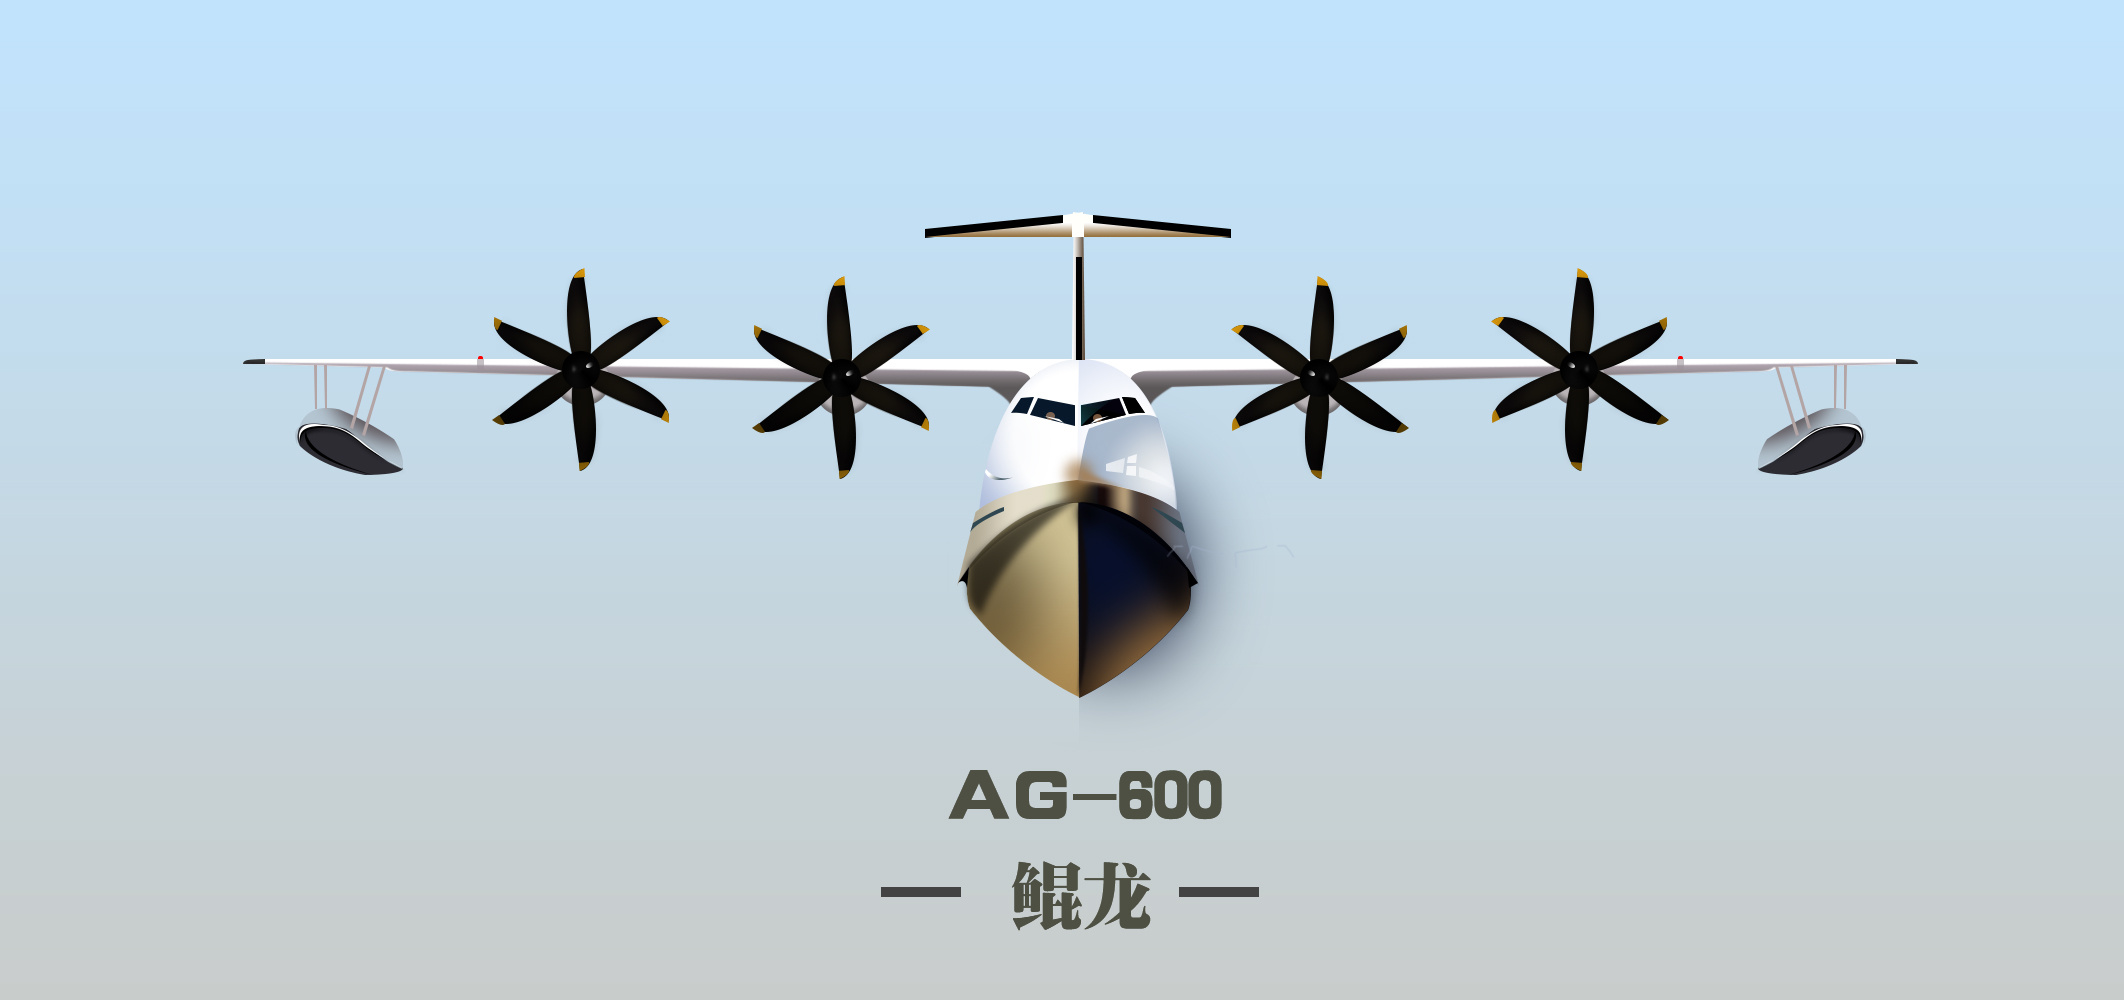 ag600 鲲龙 水上飞机 矢量绘制练笔